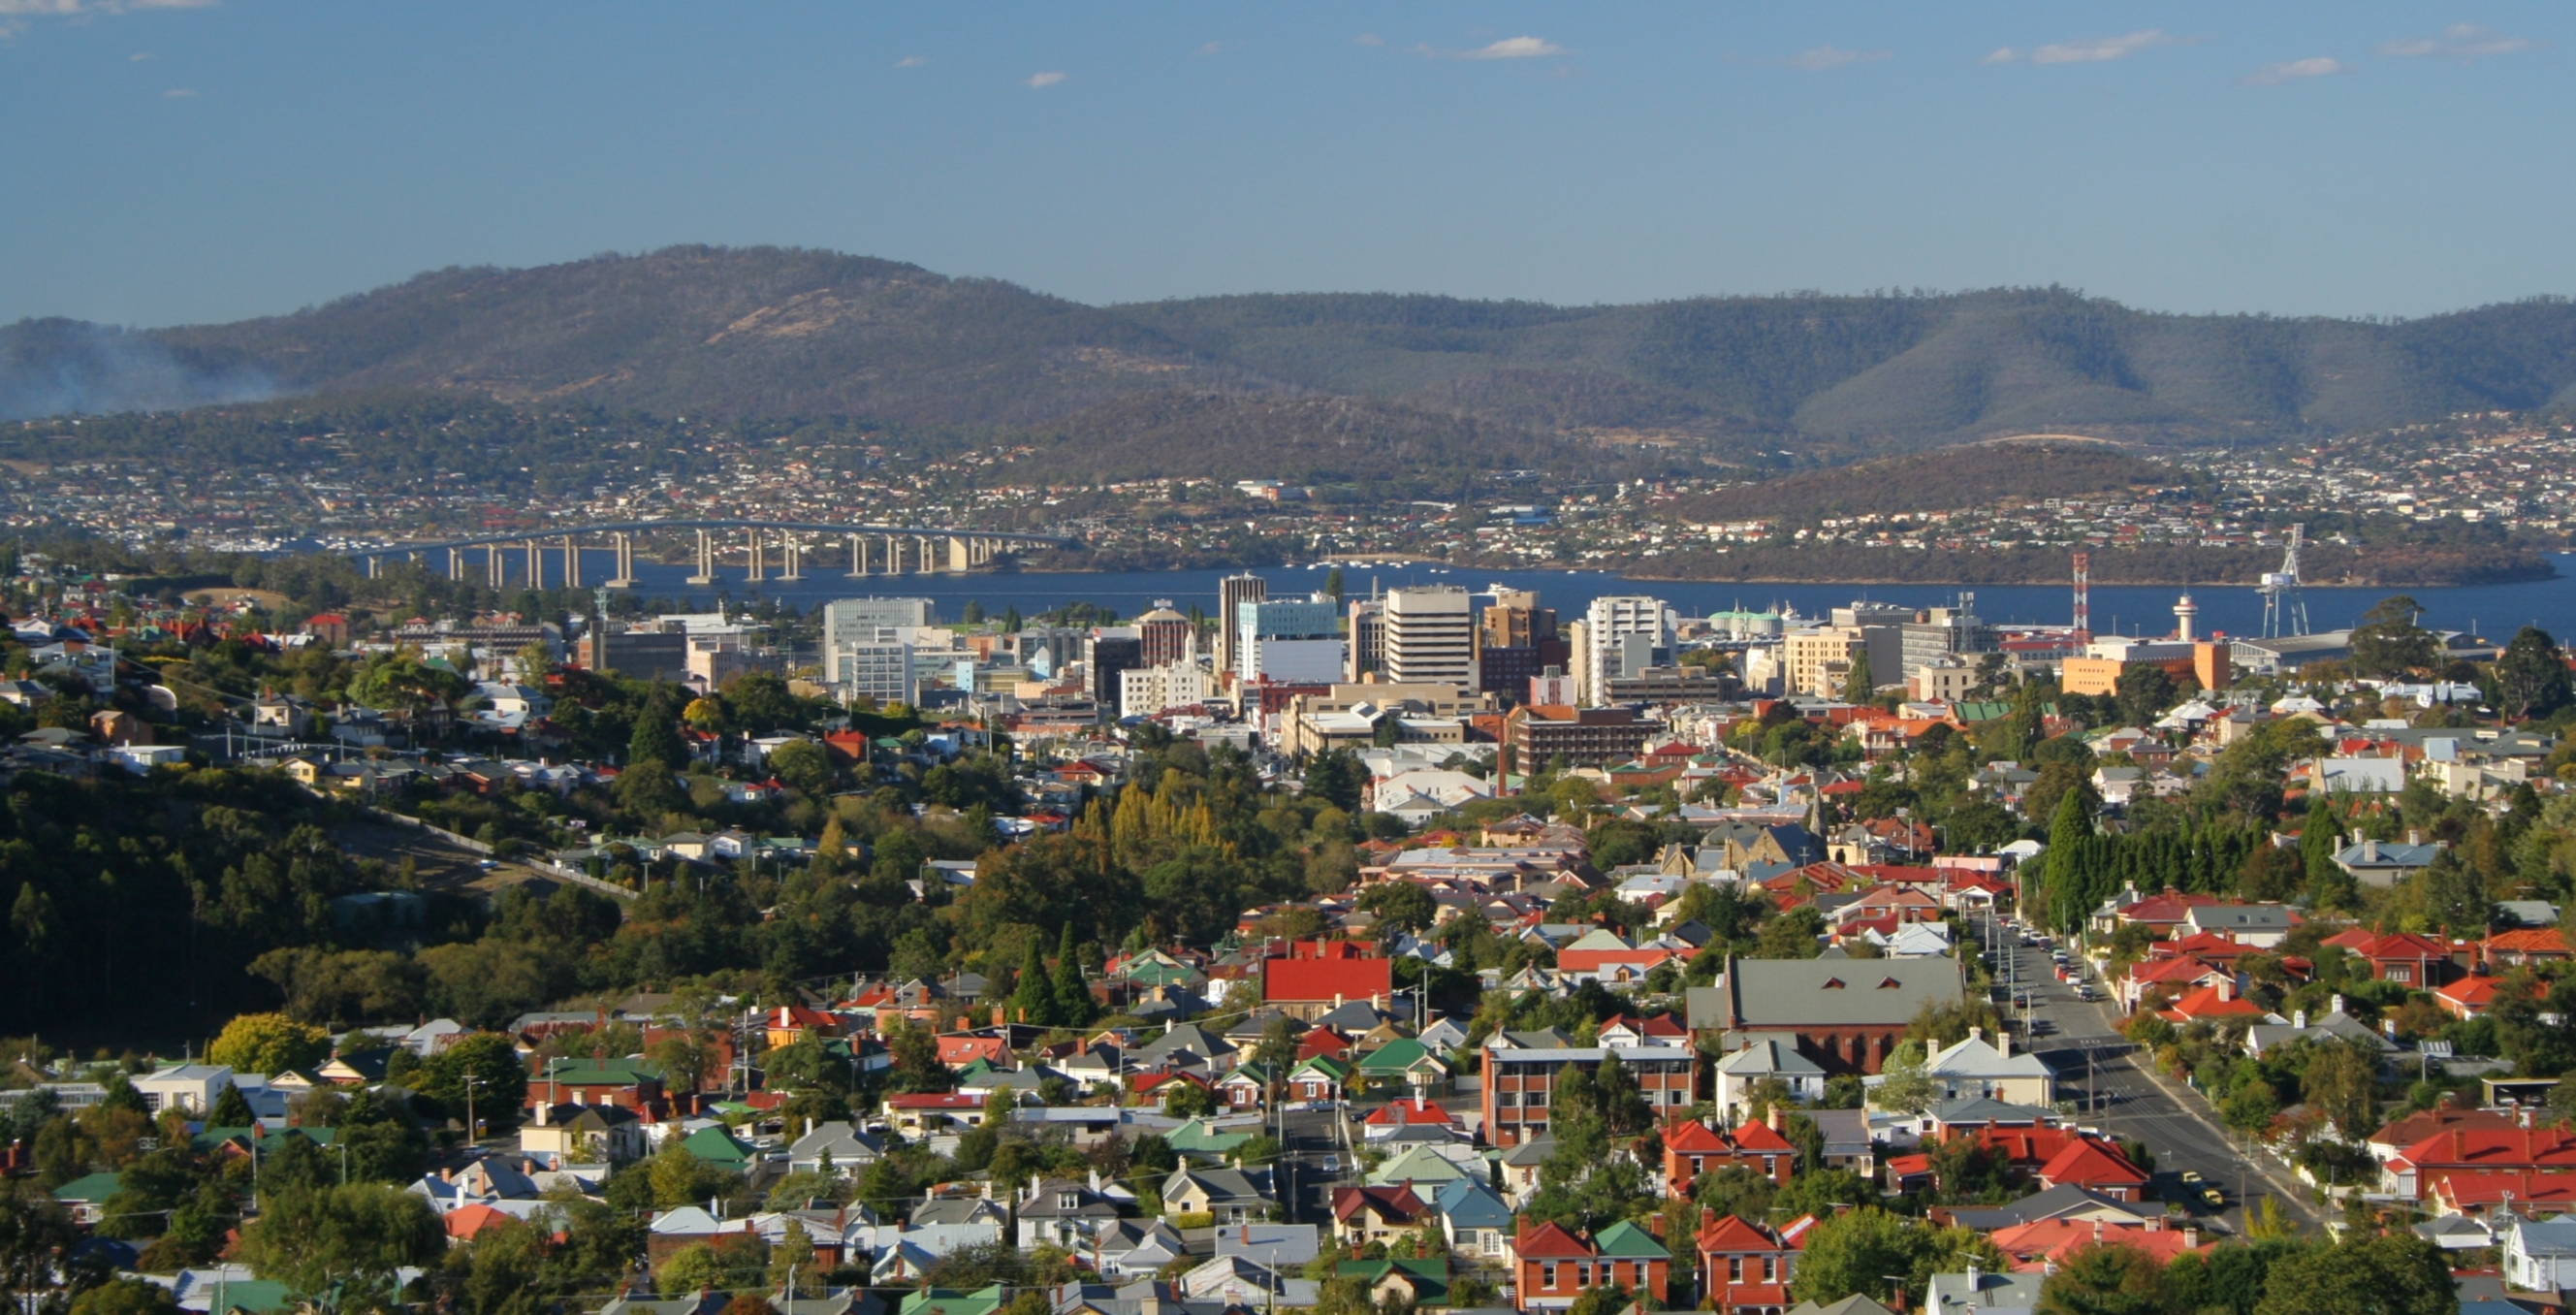 2024 Lunar New Year Festival - City of Hobart, Tasmania Australia